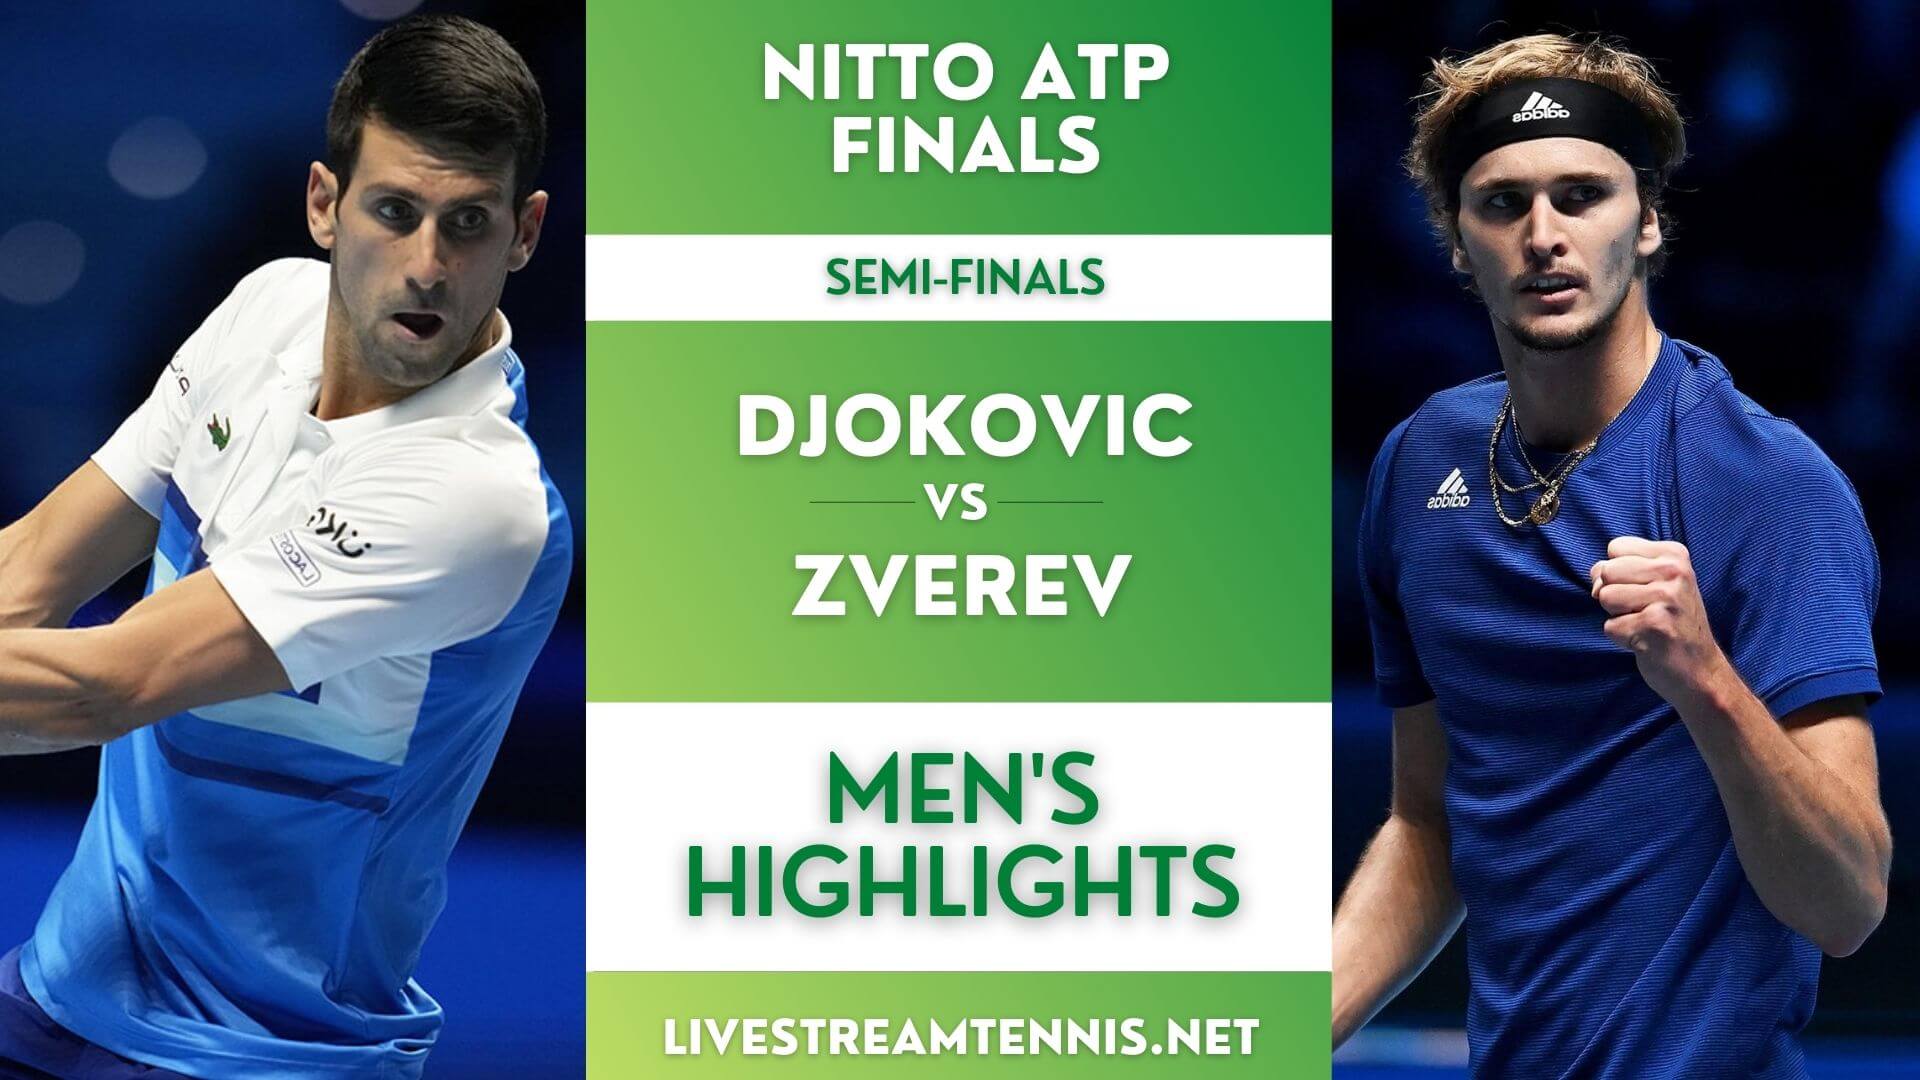 Nitto ATP Finals Semi Final 2 Highlights 2021